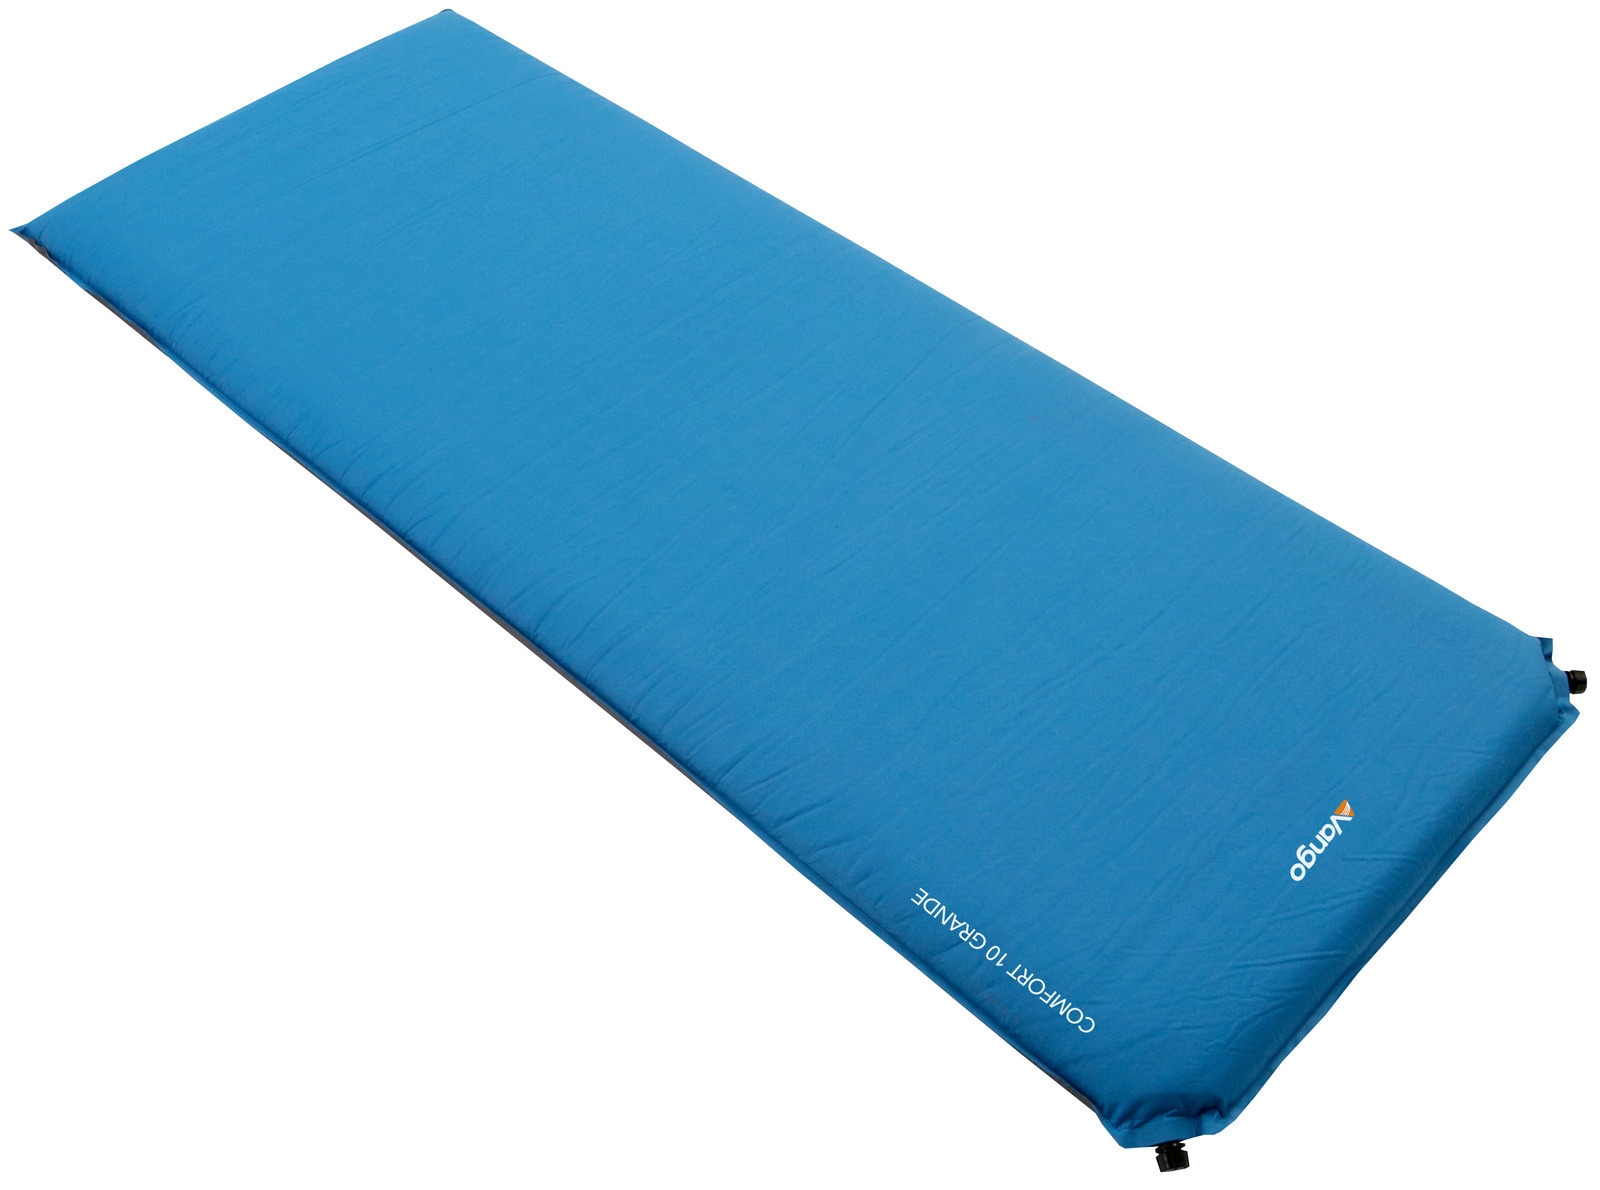 10cm Grande Self-inflating Camping mat